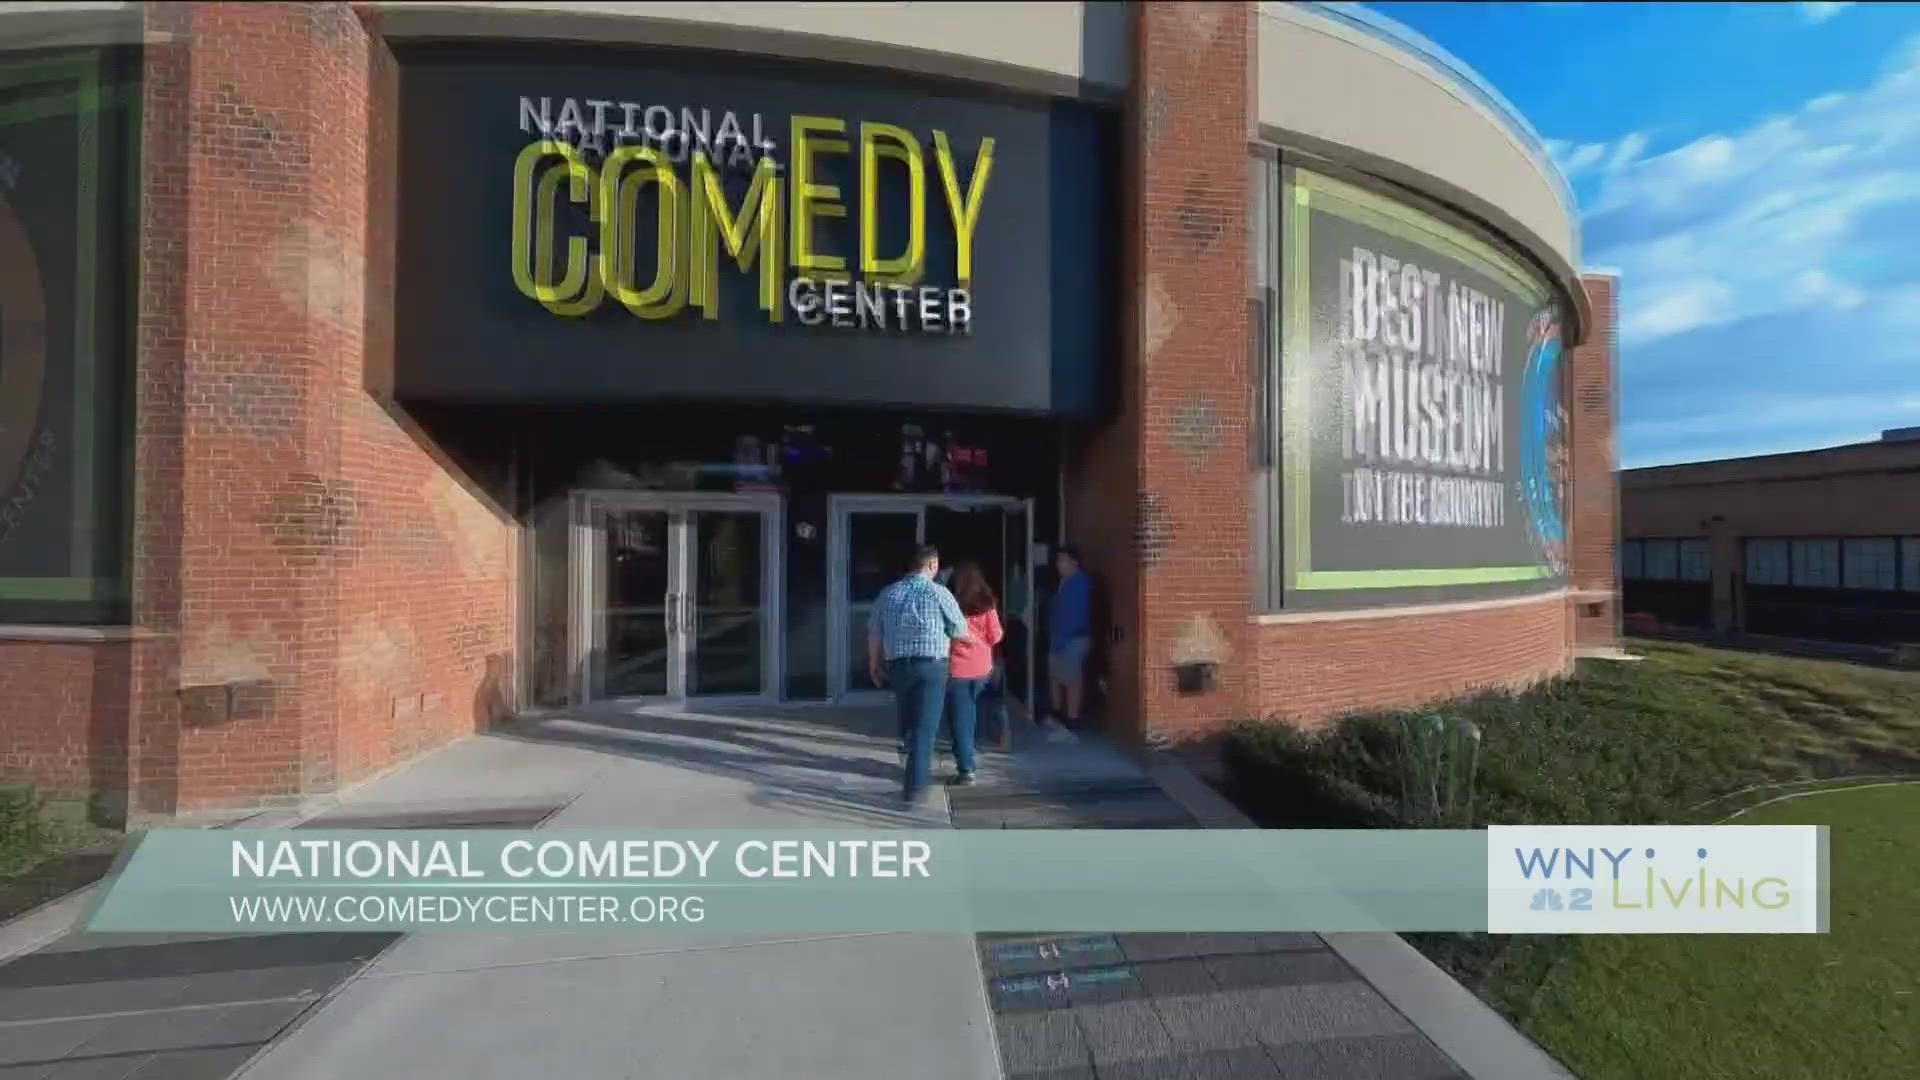 WNY Living- February 18th - National Comedy Center THIS VIDEO IS SPONSORED BY THE NATIONAL COMEDY CENTER